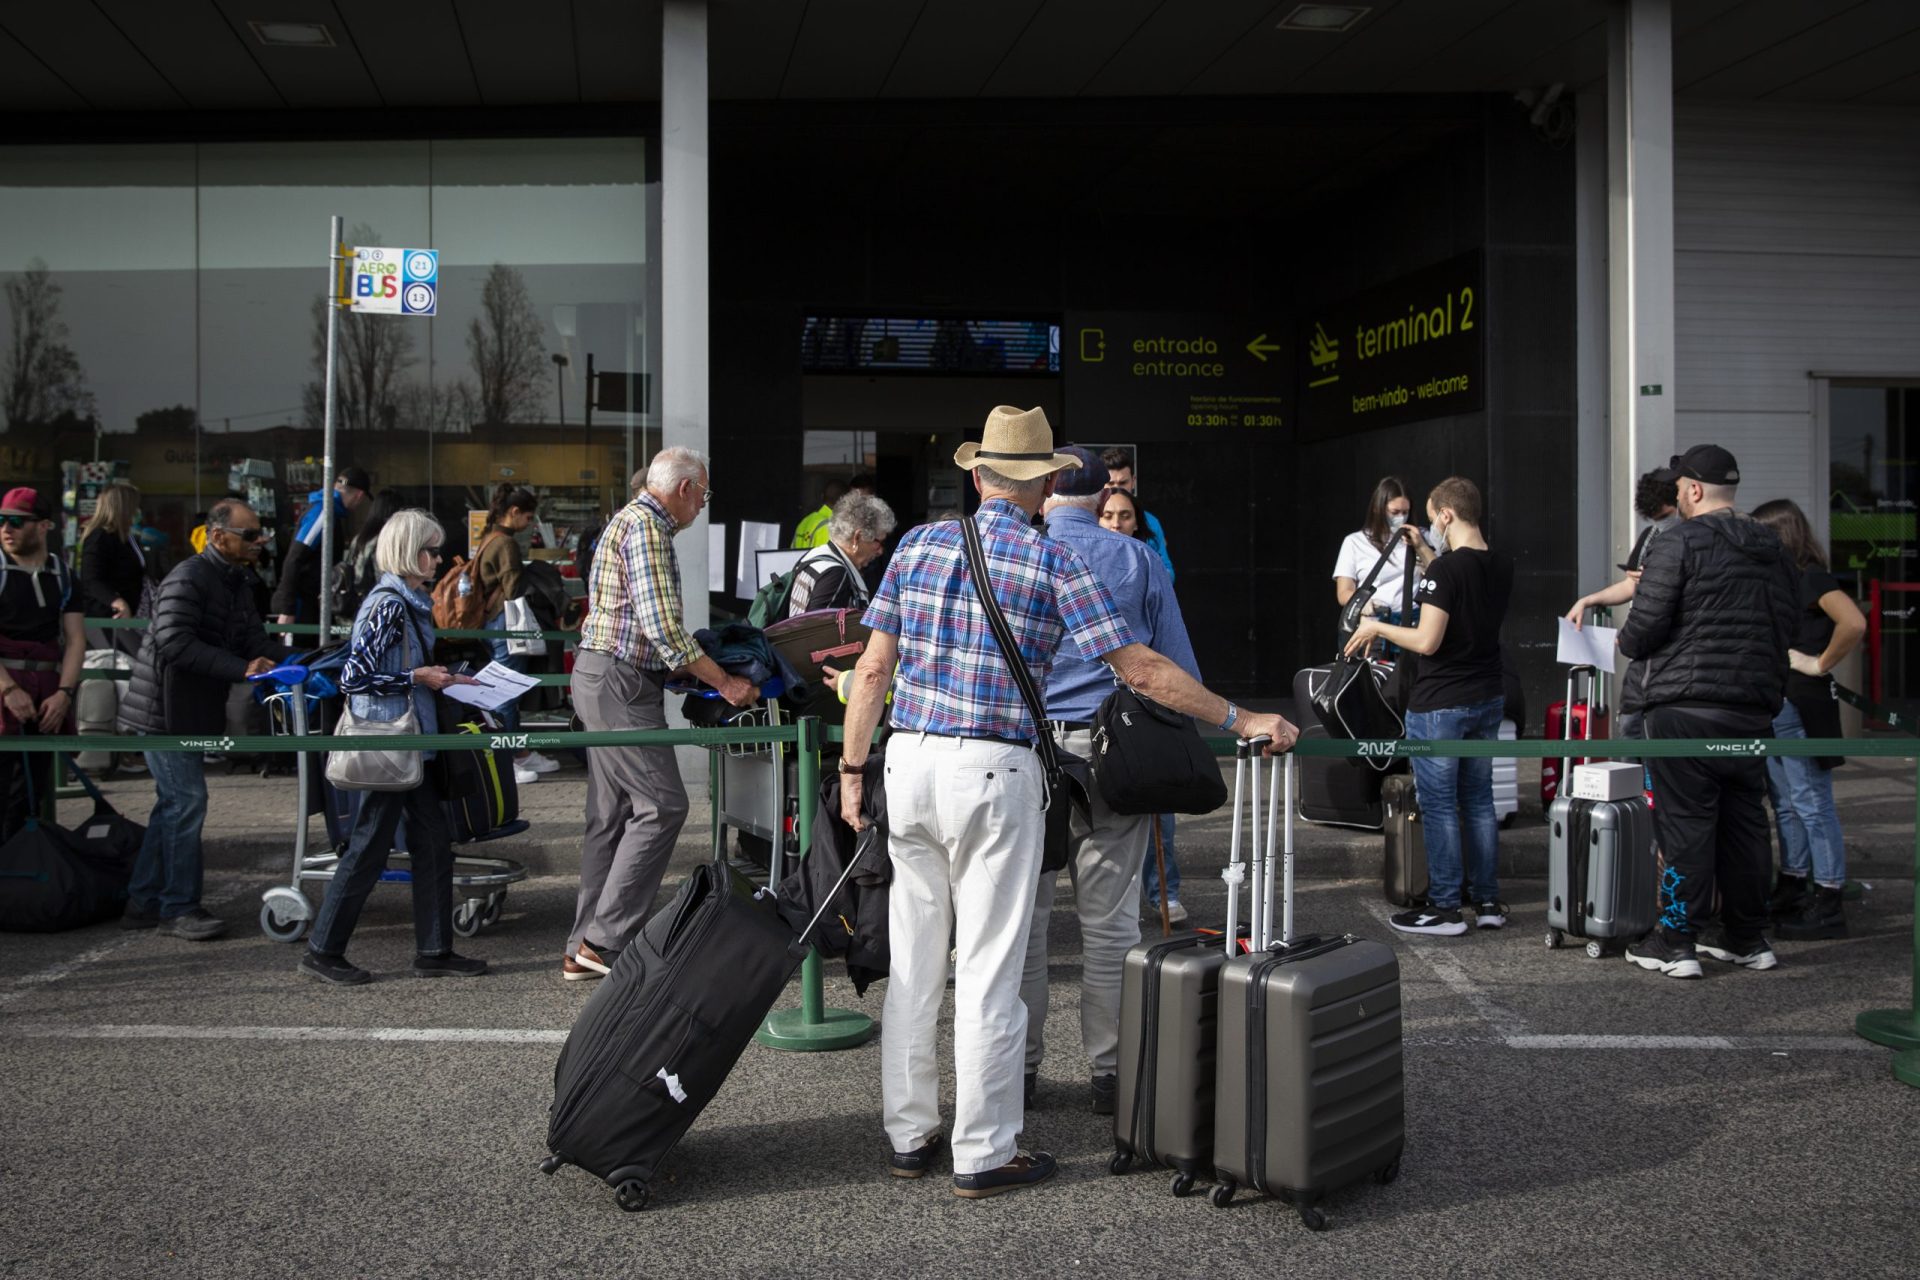 Emigrantes portugueses na Áustria indignados com discriminação nos corredores turísticos